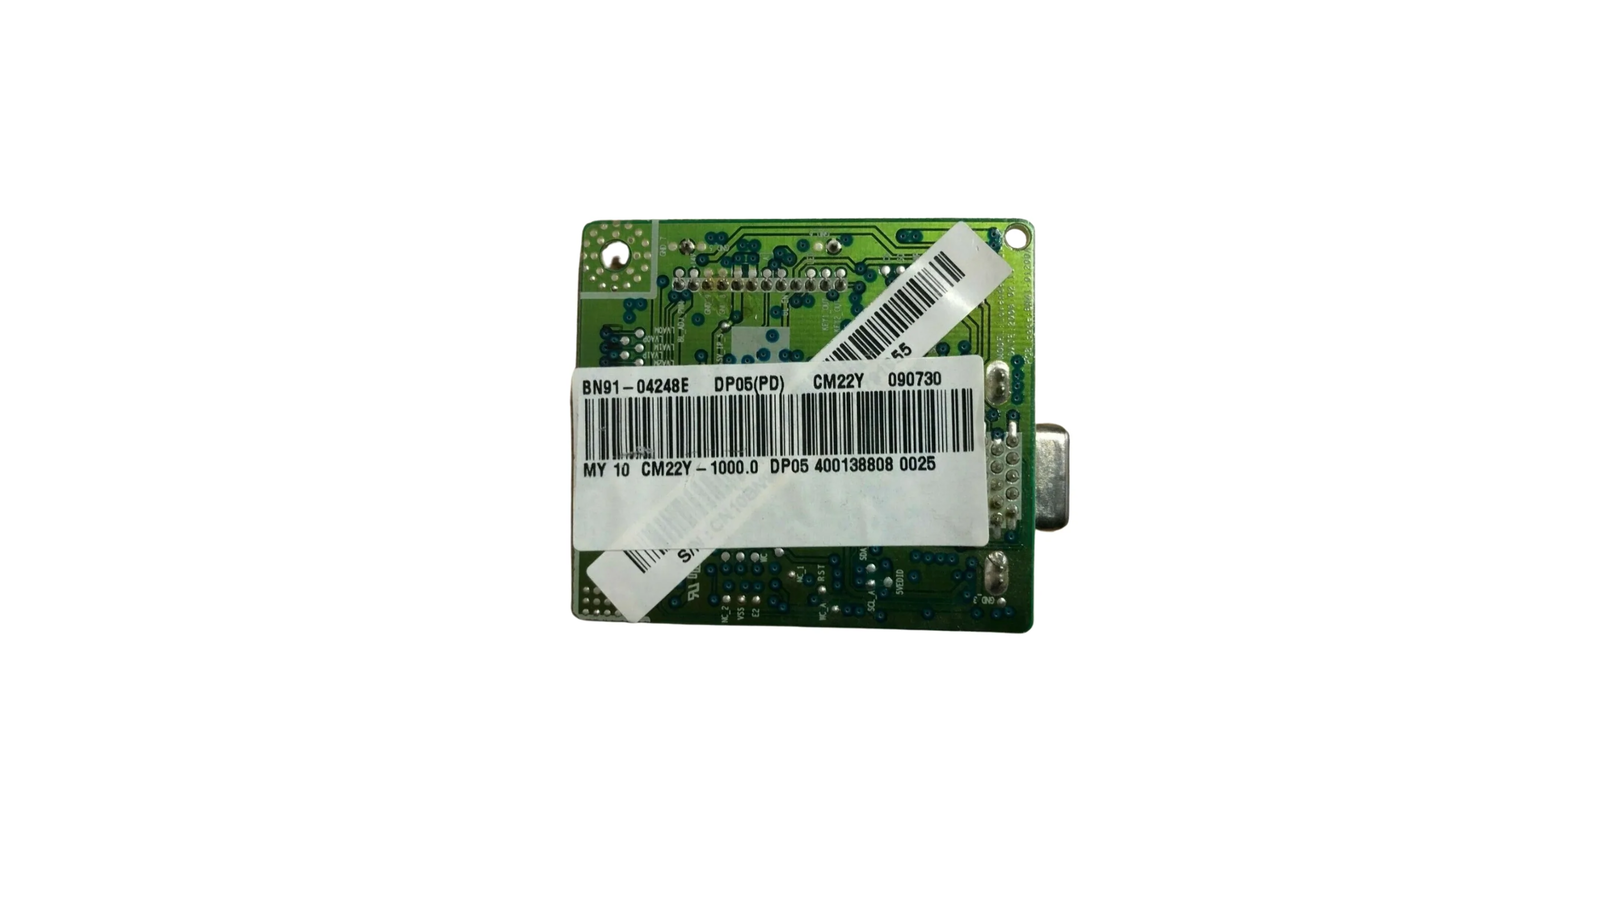 Samsung BN41-01200A VGA monitor board